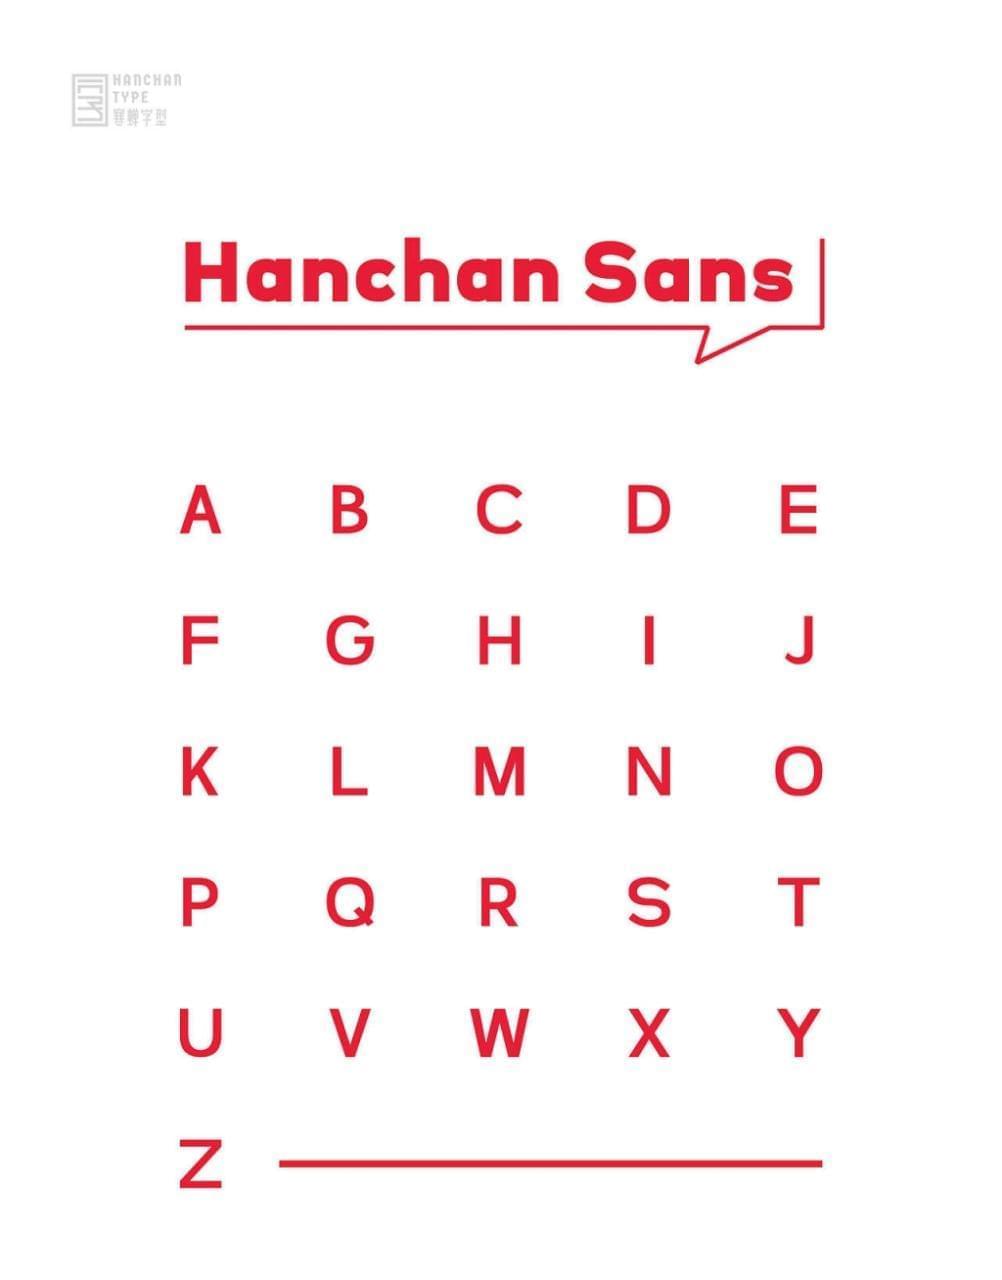 Hanchan sans8478,sans,字体,引见,热蝉,字型